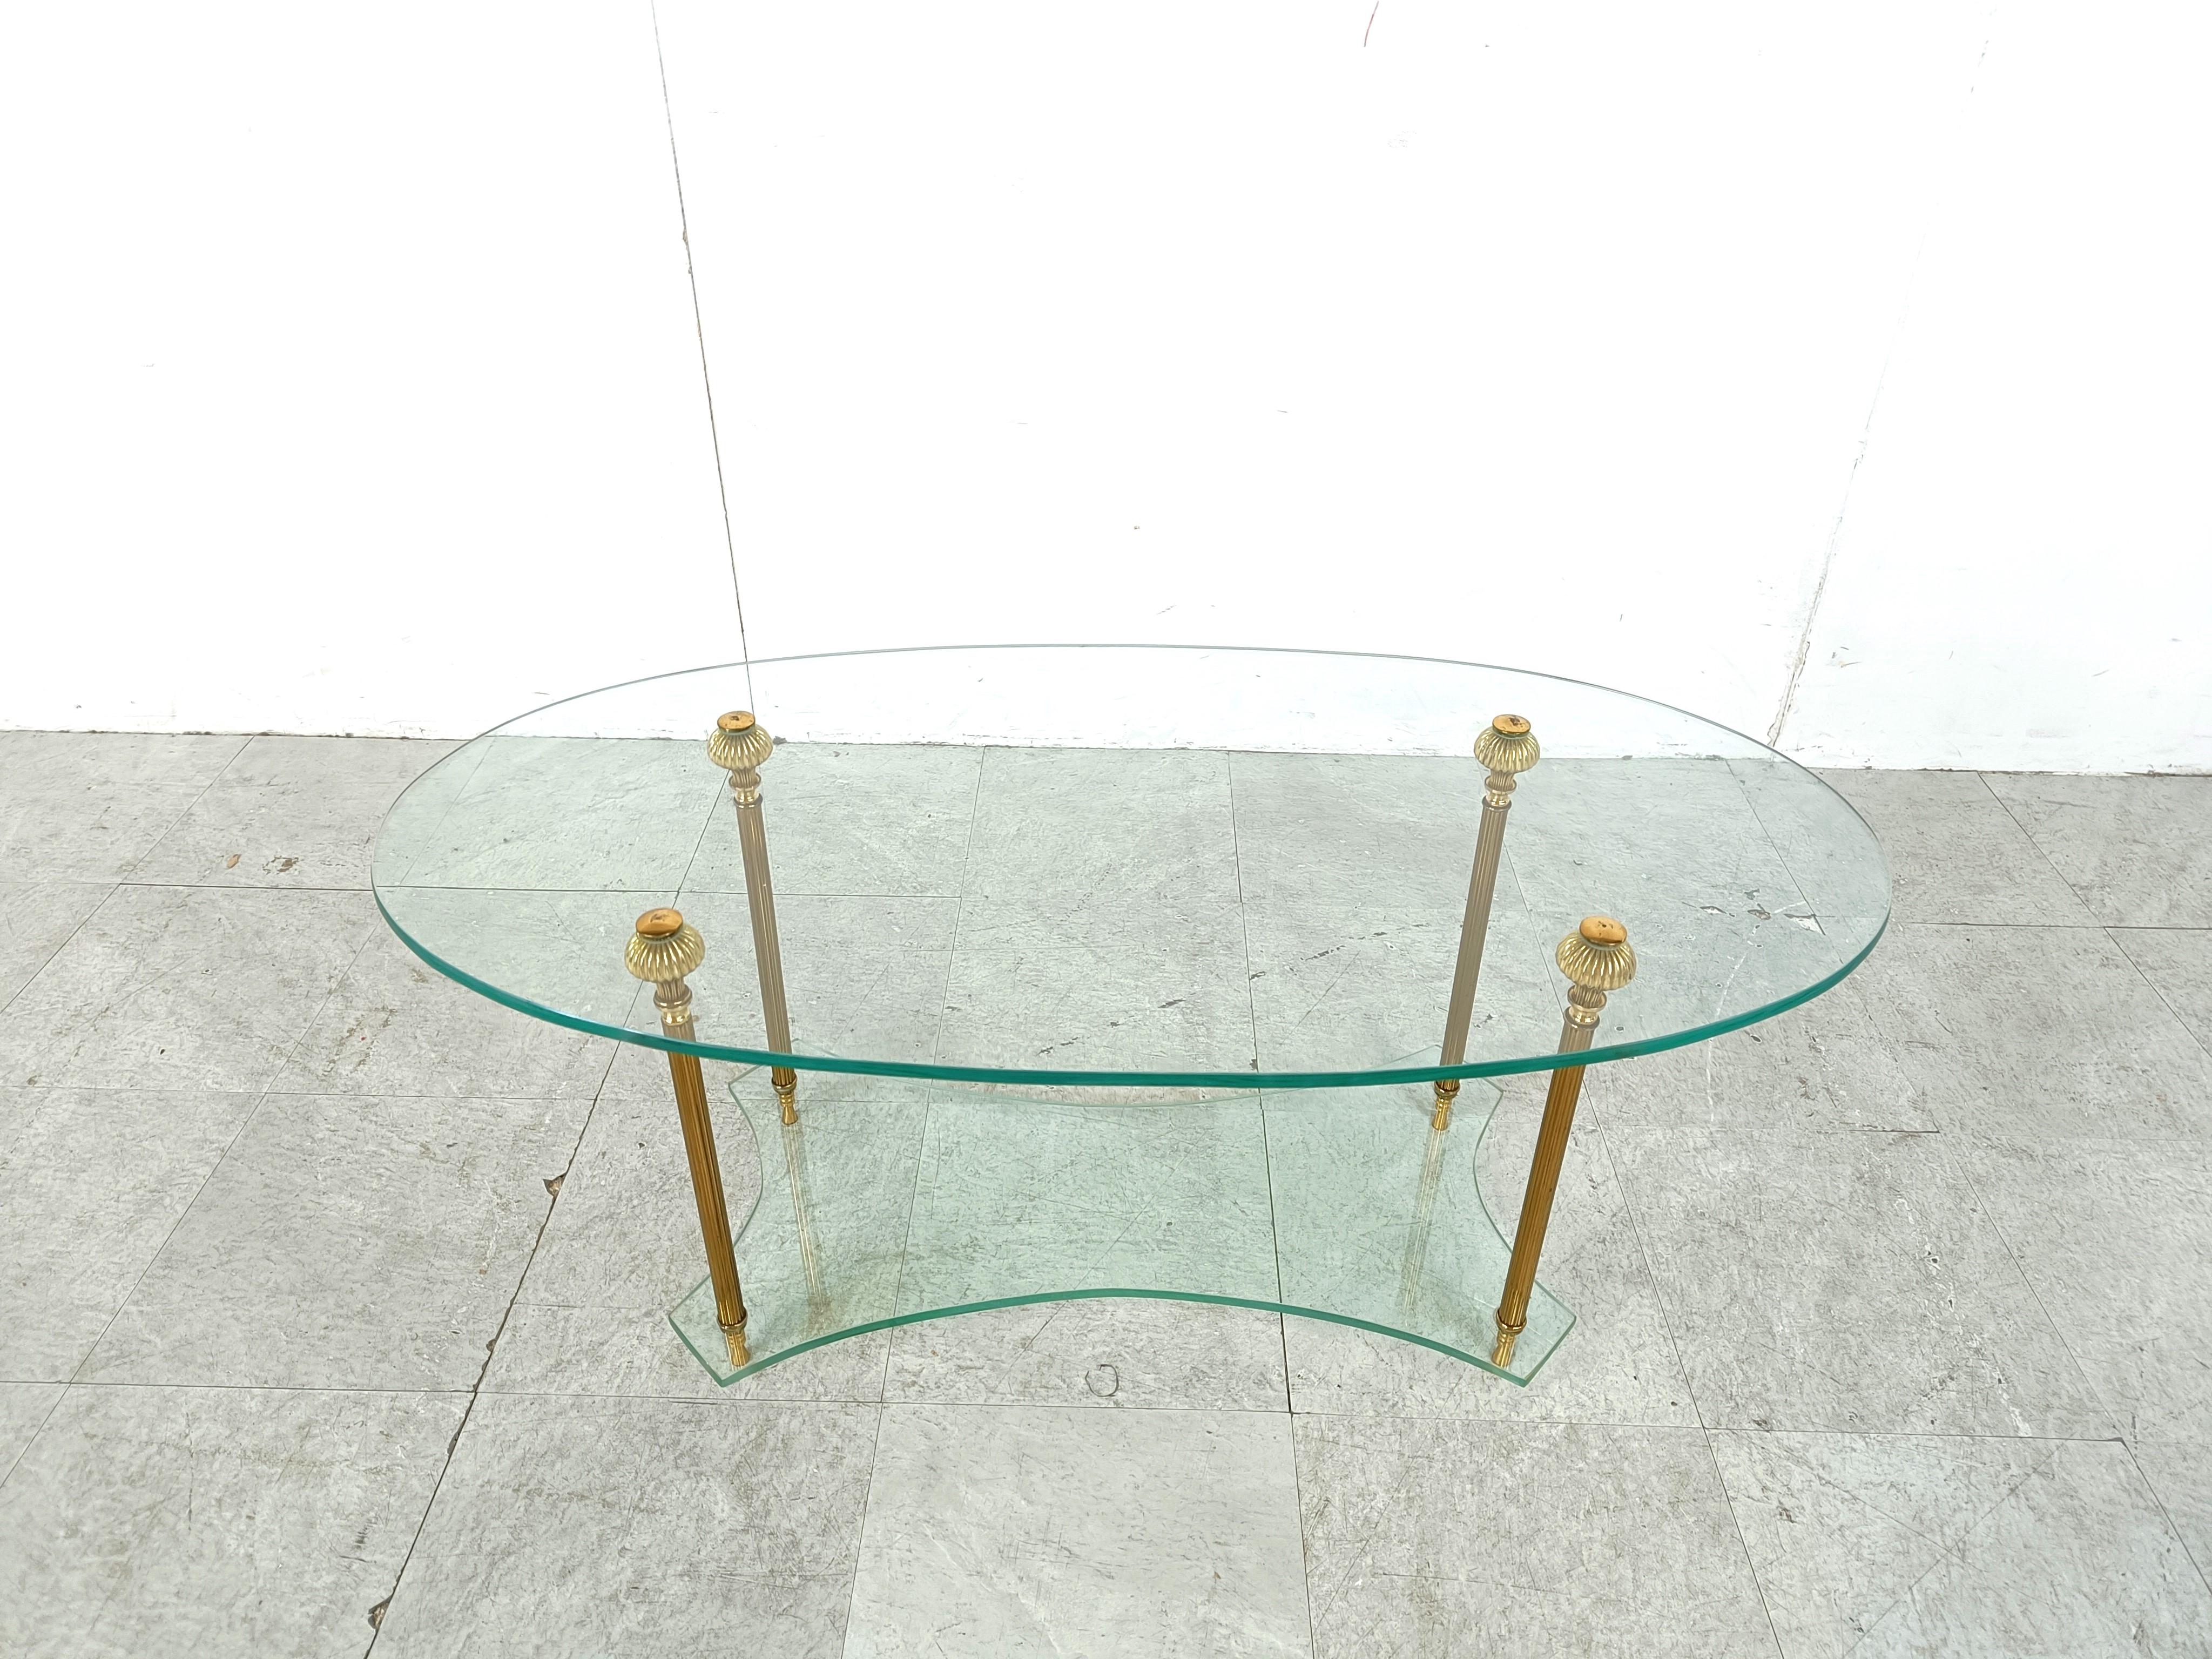 Table basse vintage en verre ovale à deux niveaux avec pieds en laiton.

Quincaillerie en laiton de style néoclassique.

Très bon état.

années 1970 - italie

Hauteur : 43cm/16.92